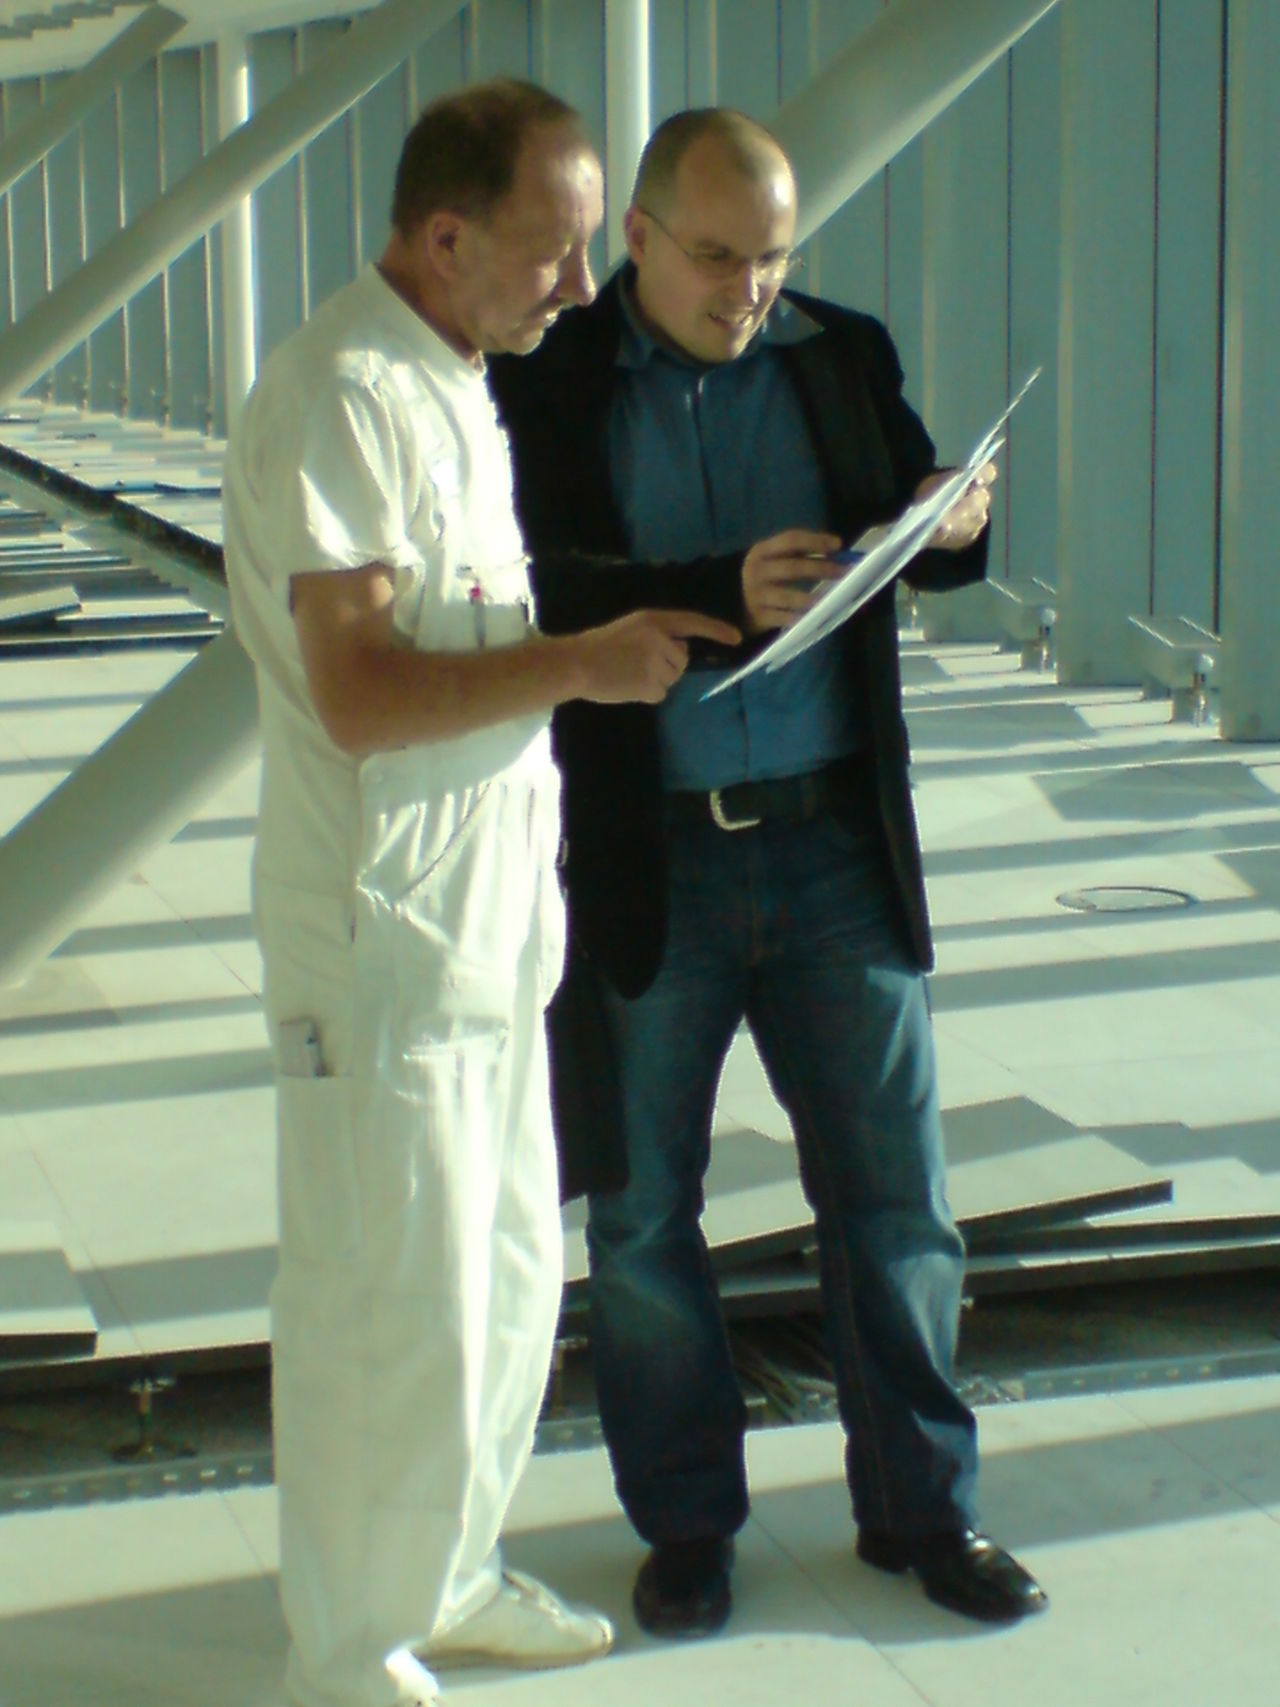 Andreas Scherer bespricht sich mit einem anderen Mann auf der Baustelle.